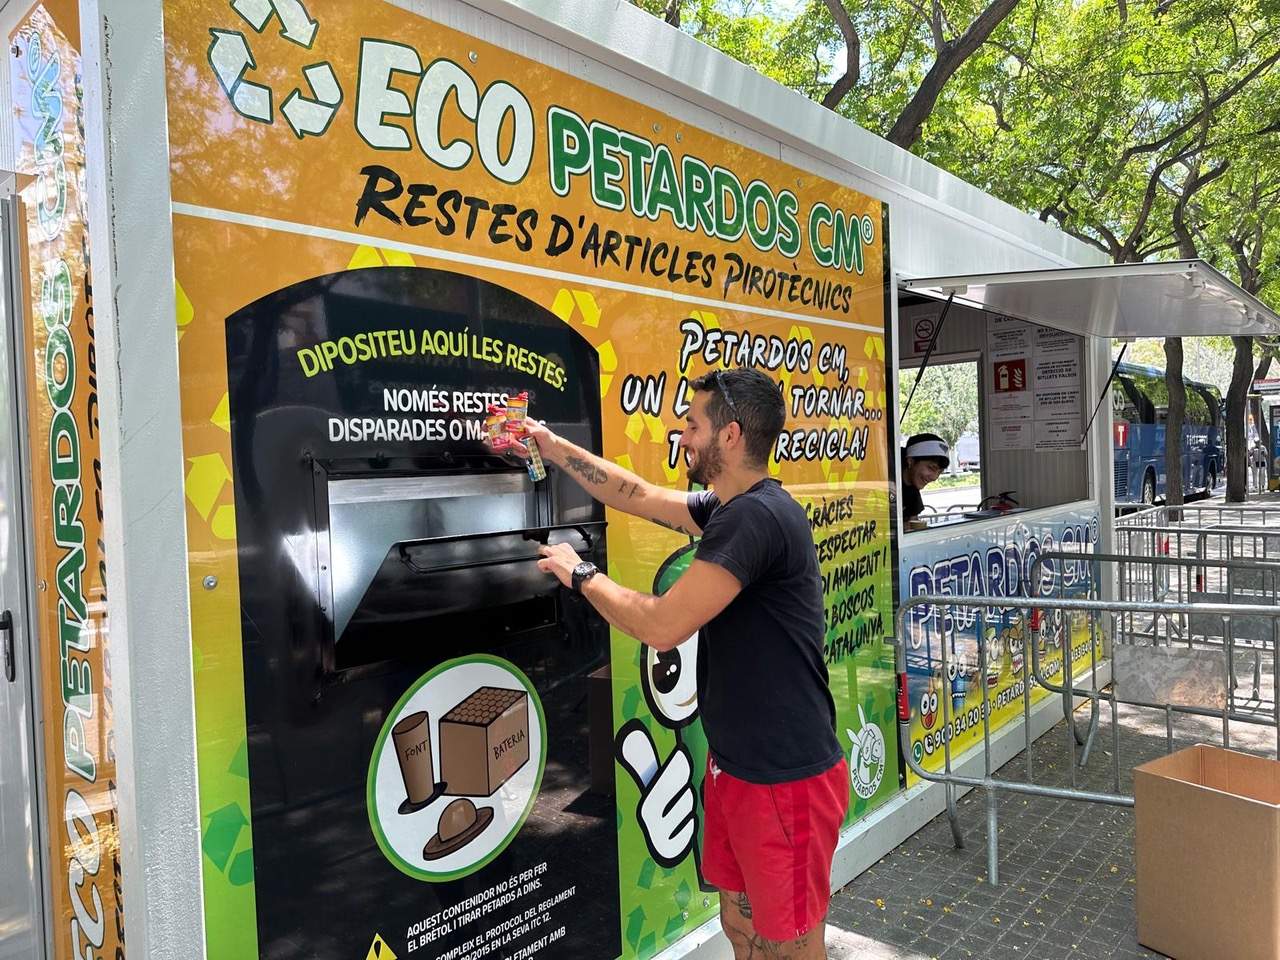 La catalana Petardos CM dissenya un contenidor amb IA per recollir els petards